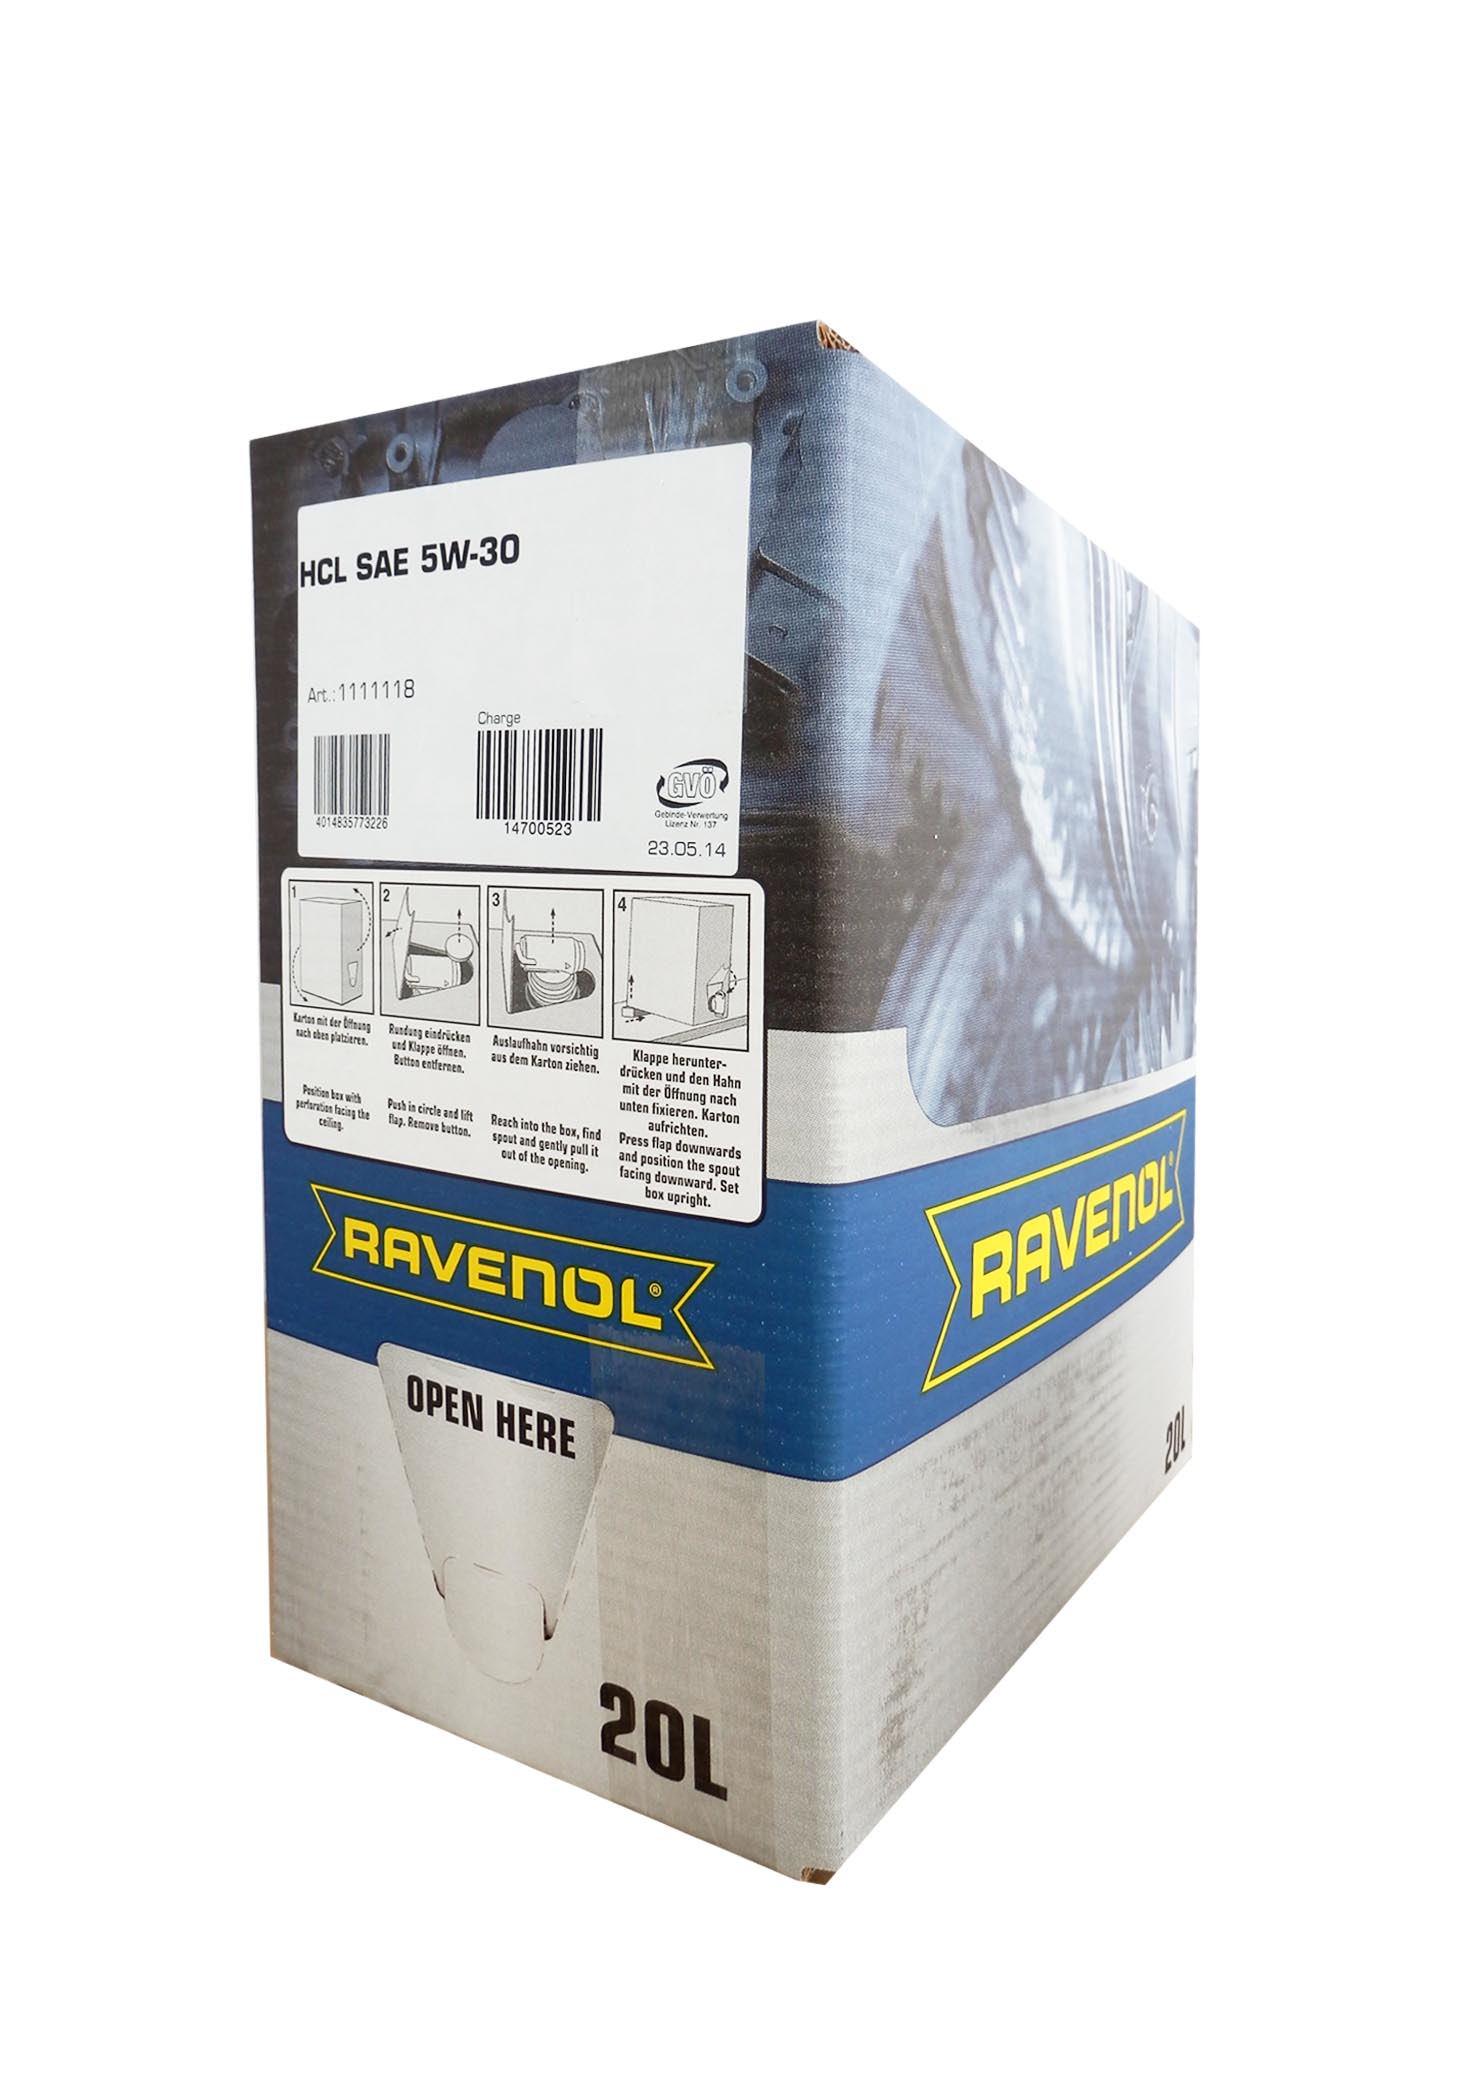 Моторное масло RAVENOL HCL SAE 5W30 (20л) ecobox 4014835773226